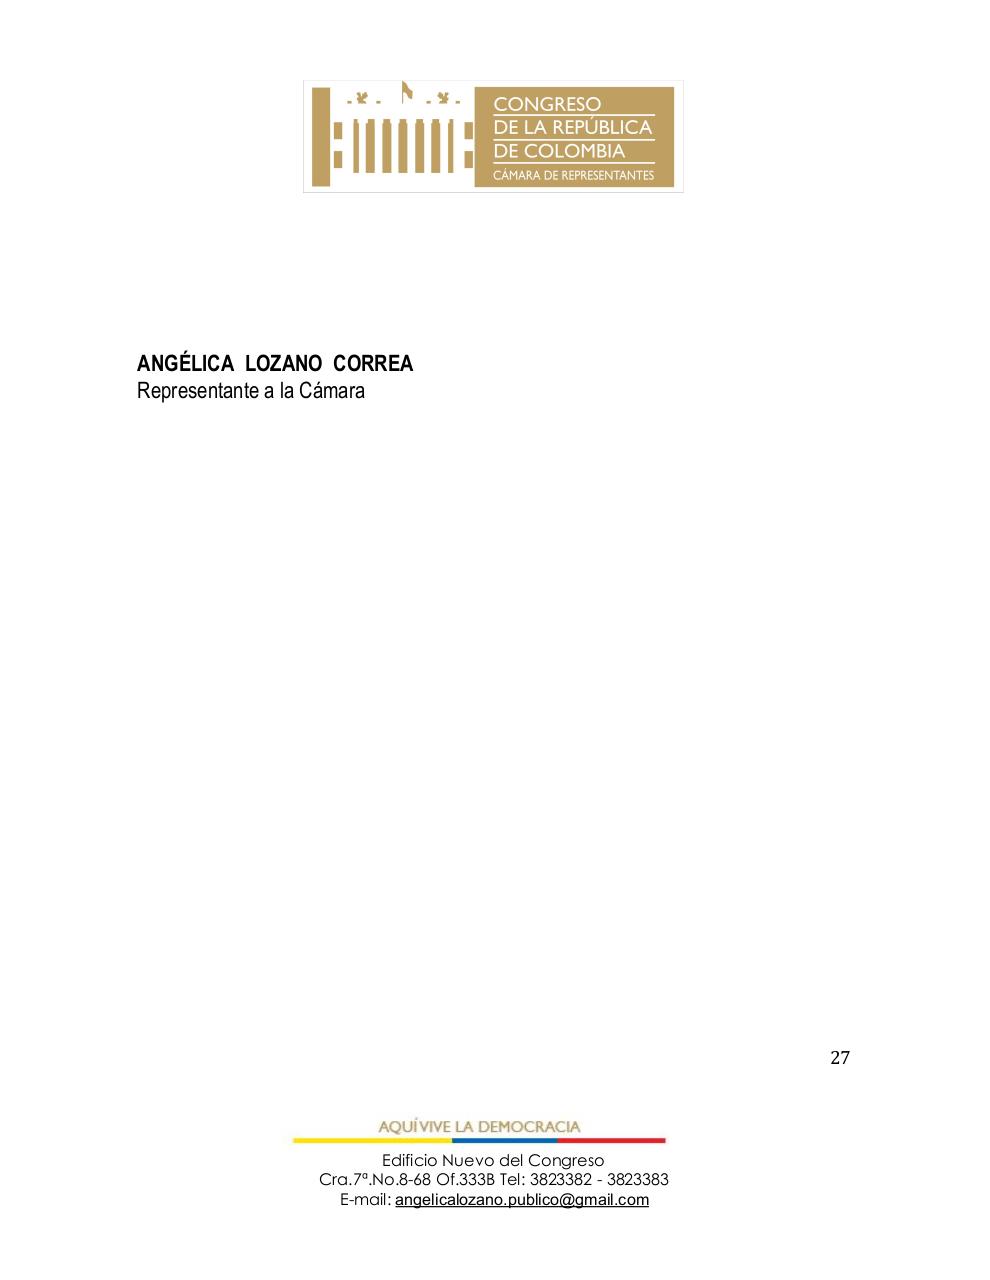 Vista previa del archivo PDF proyecto-de-ley-regimen-de-contratistas-final-radicado.pdf